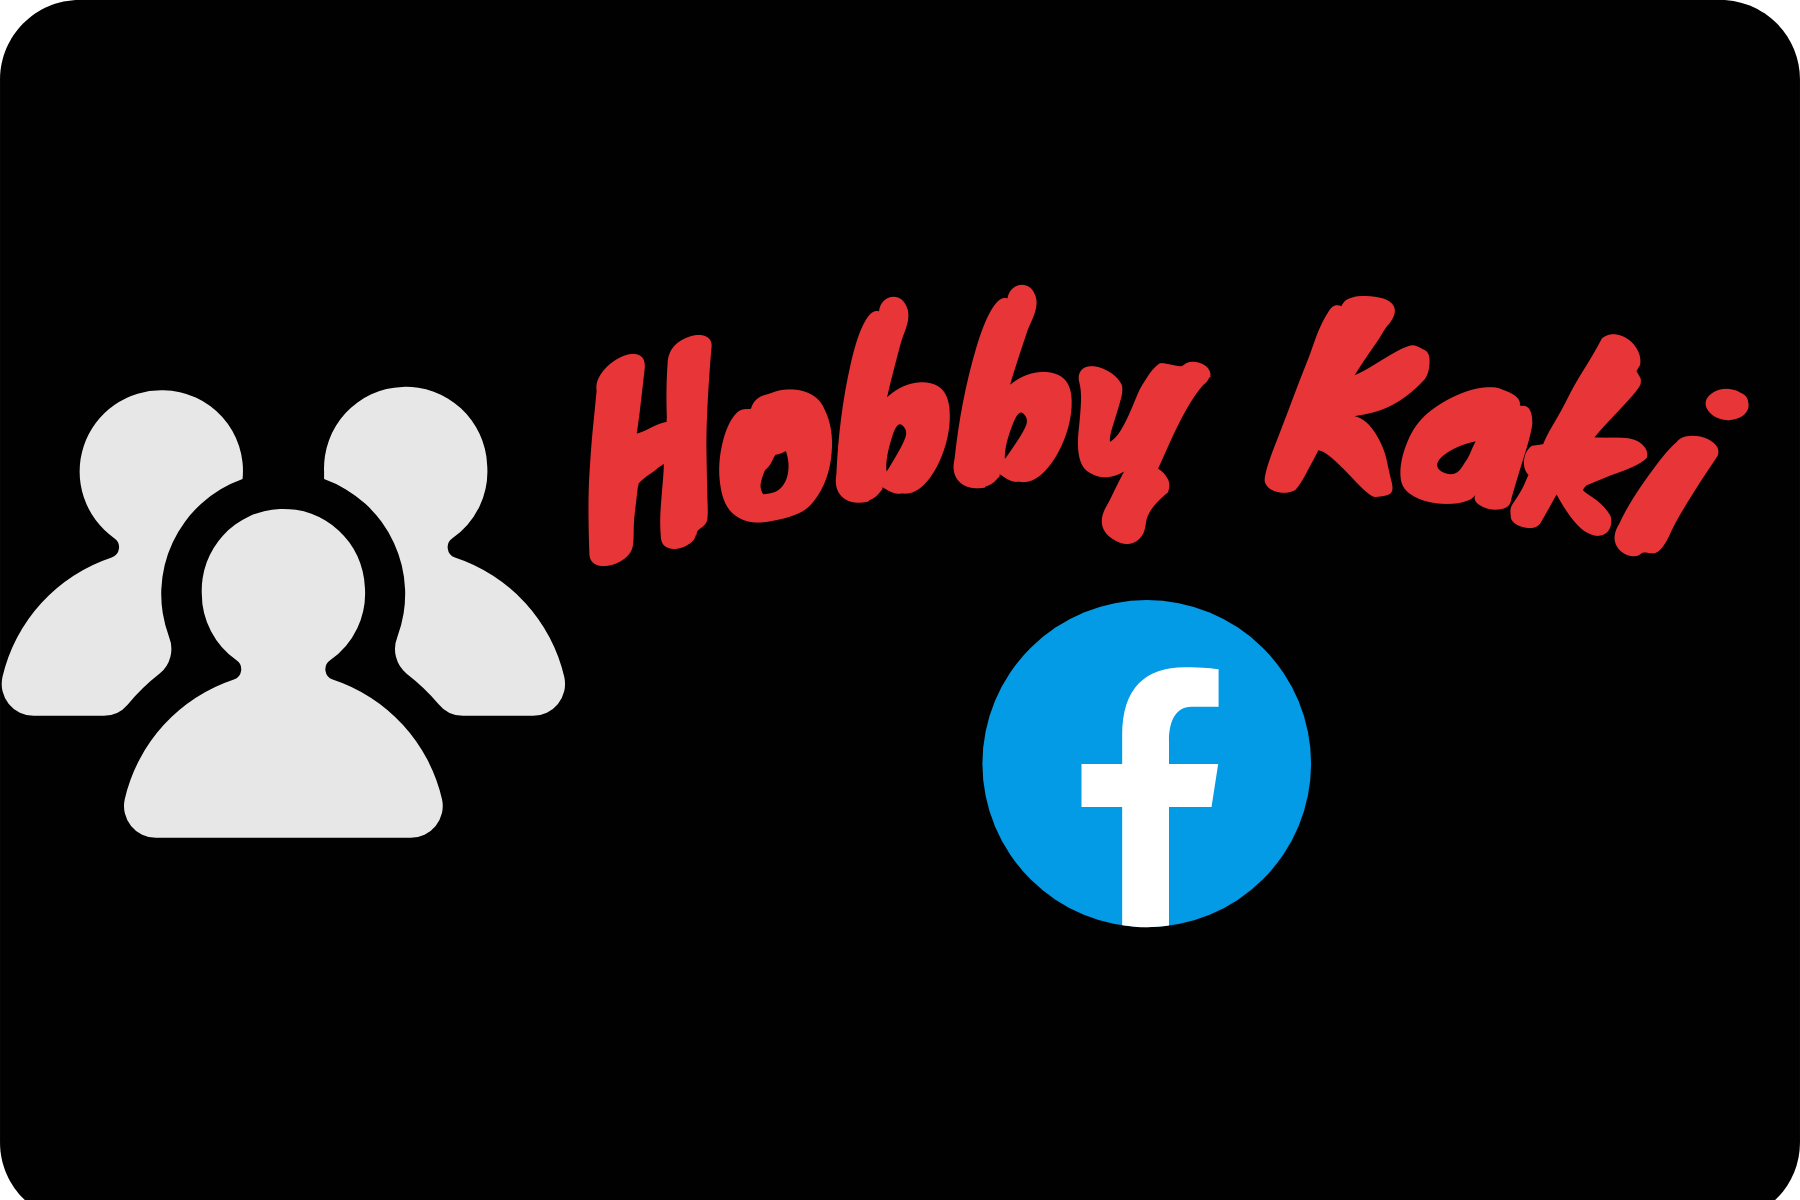 Hobby Kaki.png